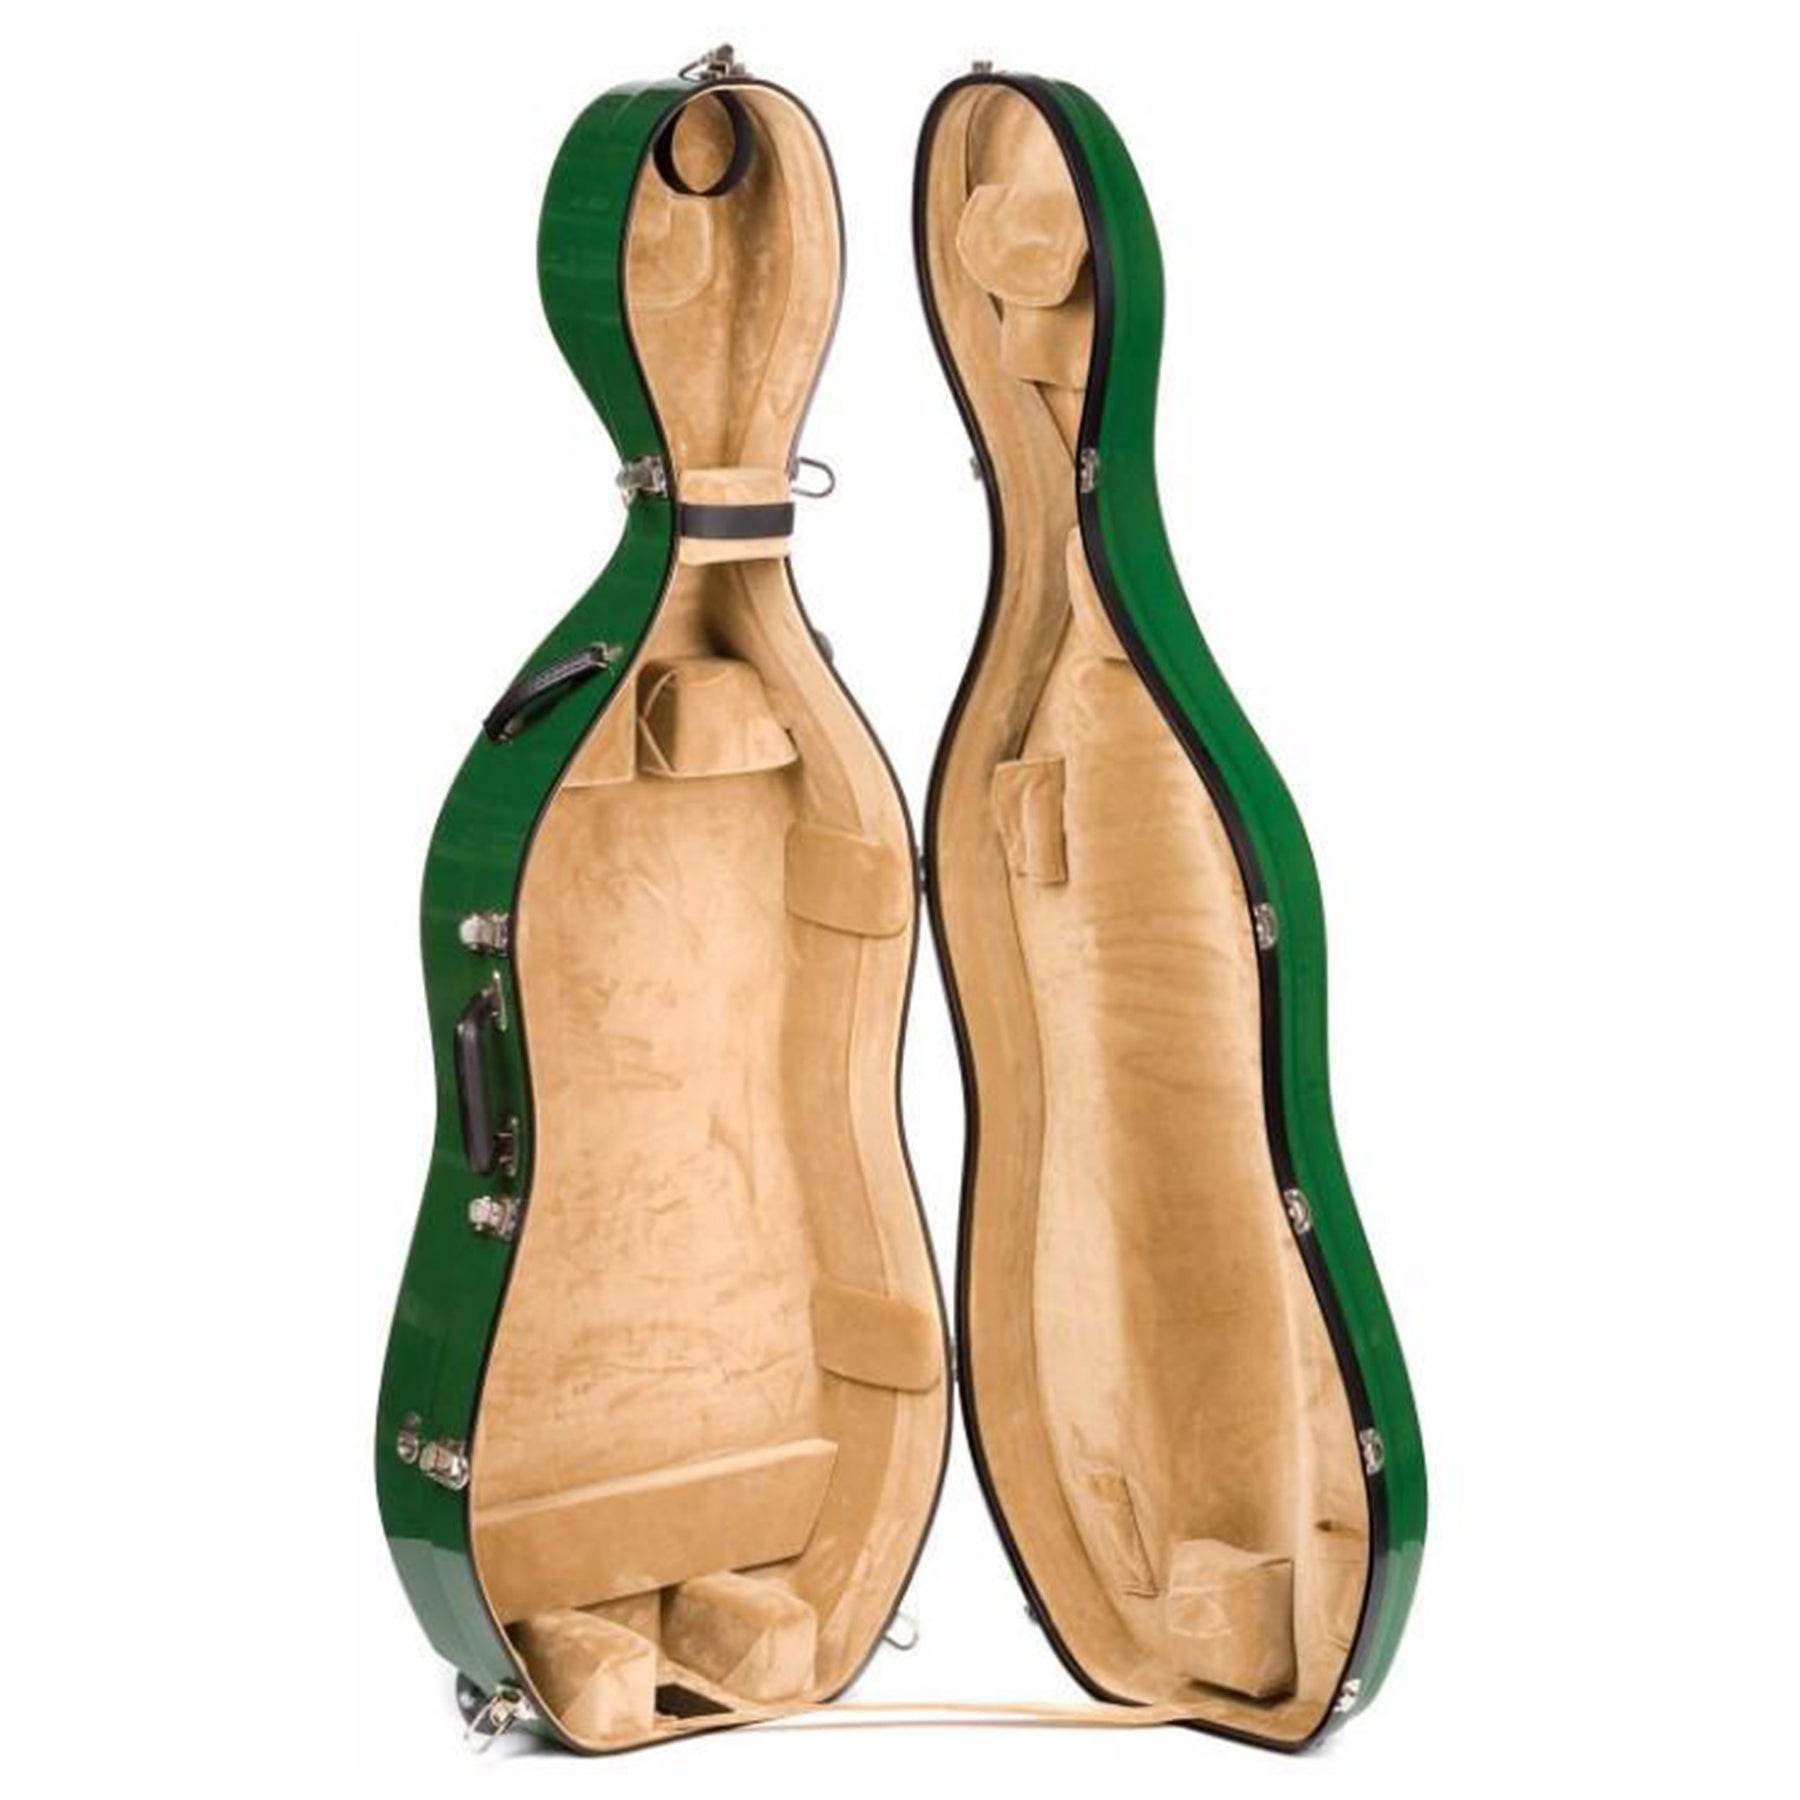 Bobelock 2000 Fiberglass Suspension Cello Case with Wheels